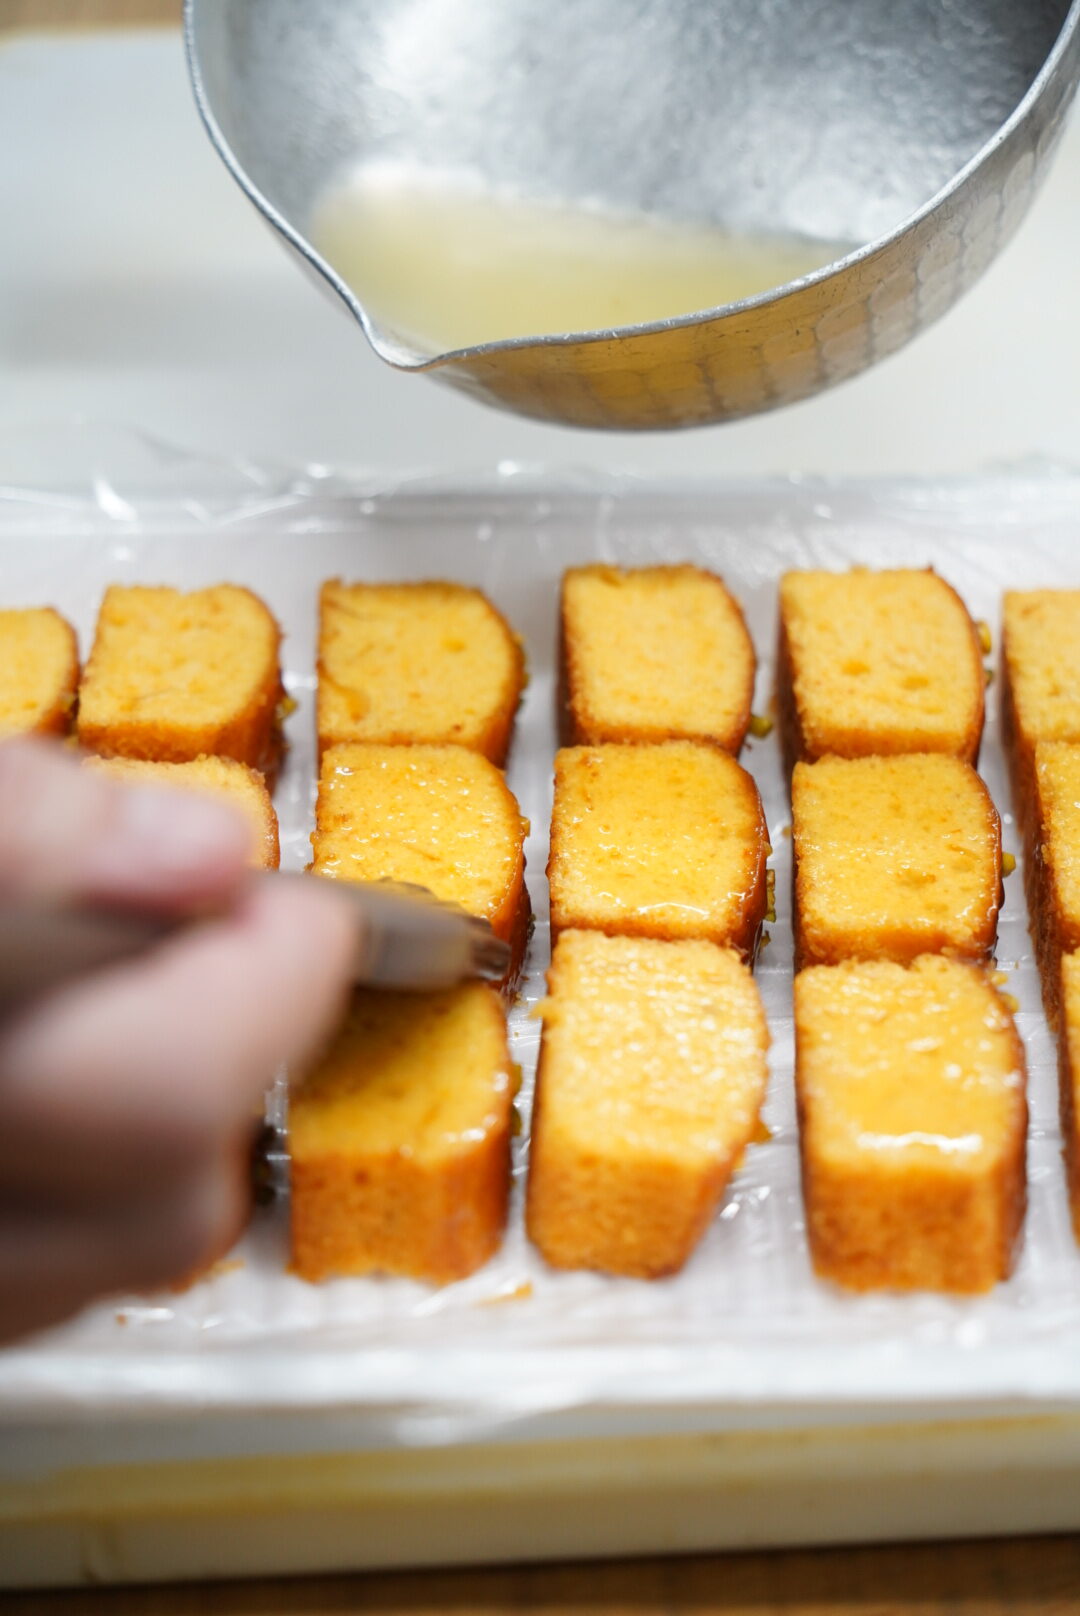 「人参パウンドケーキ」の仕上げにレモン果汁を染み込ませてしっとりとした爽やかな風味に。